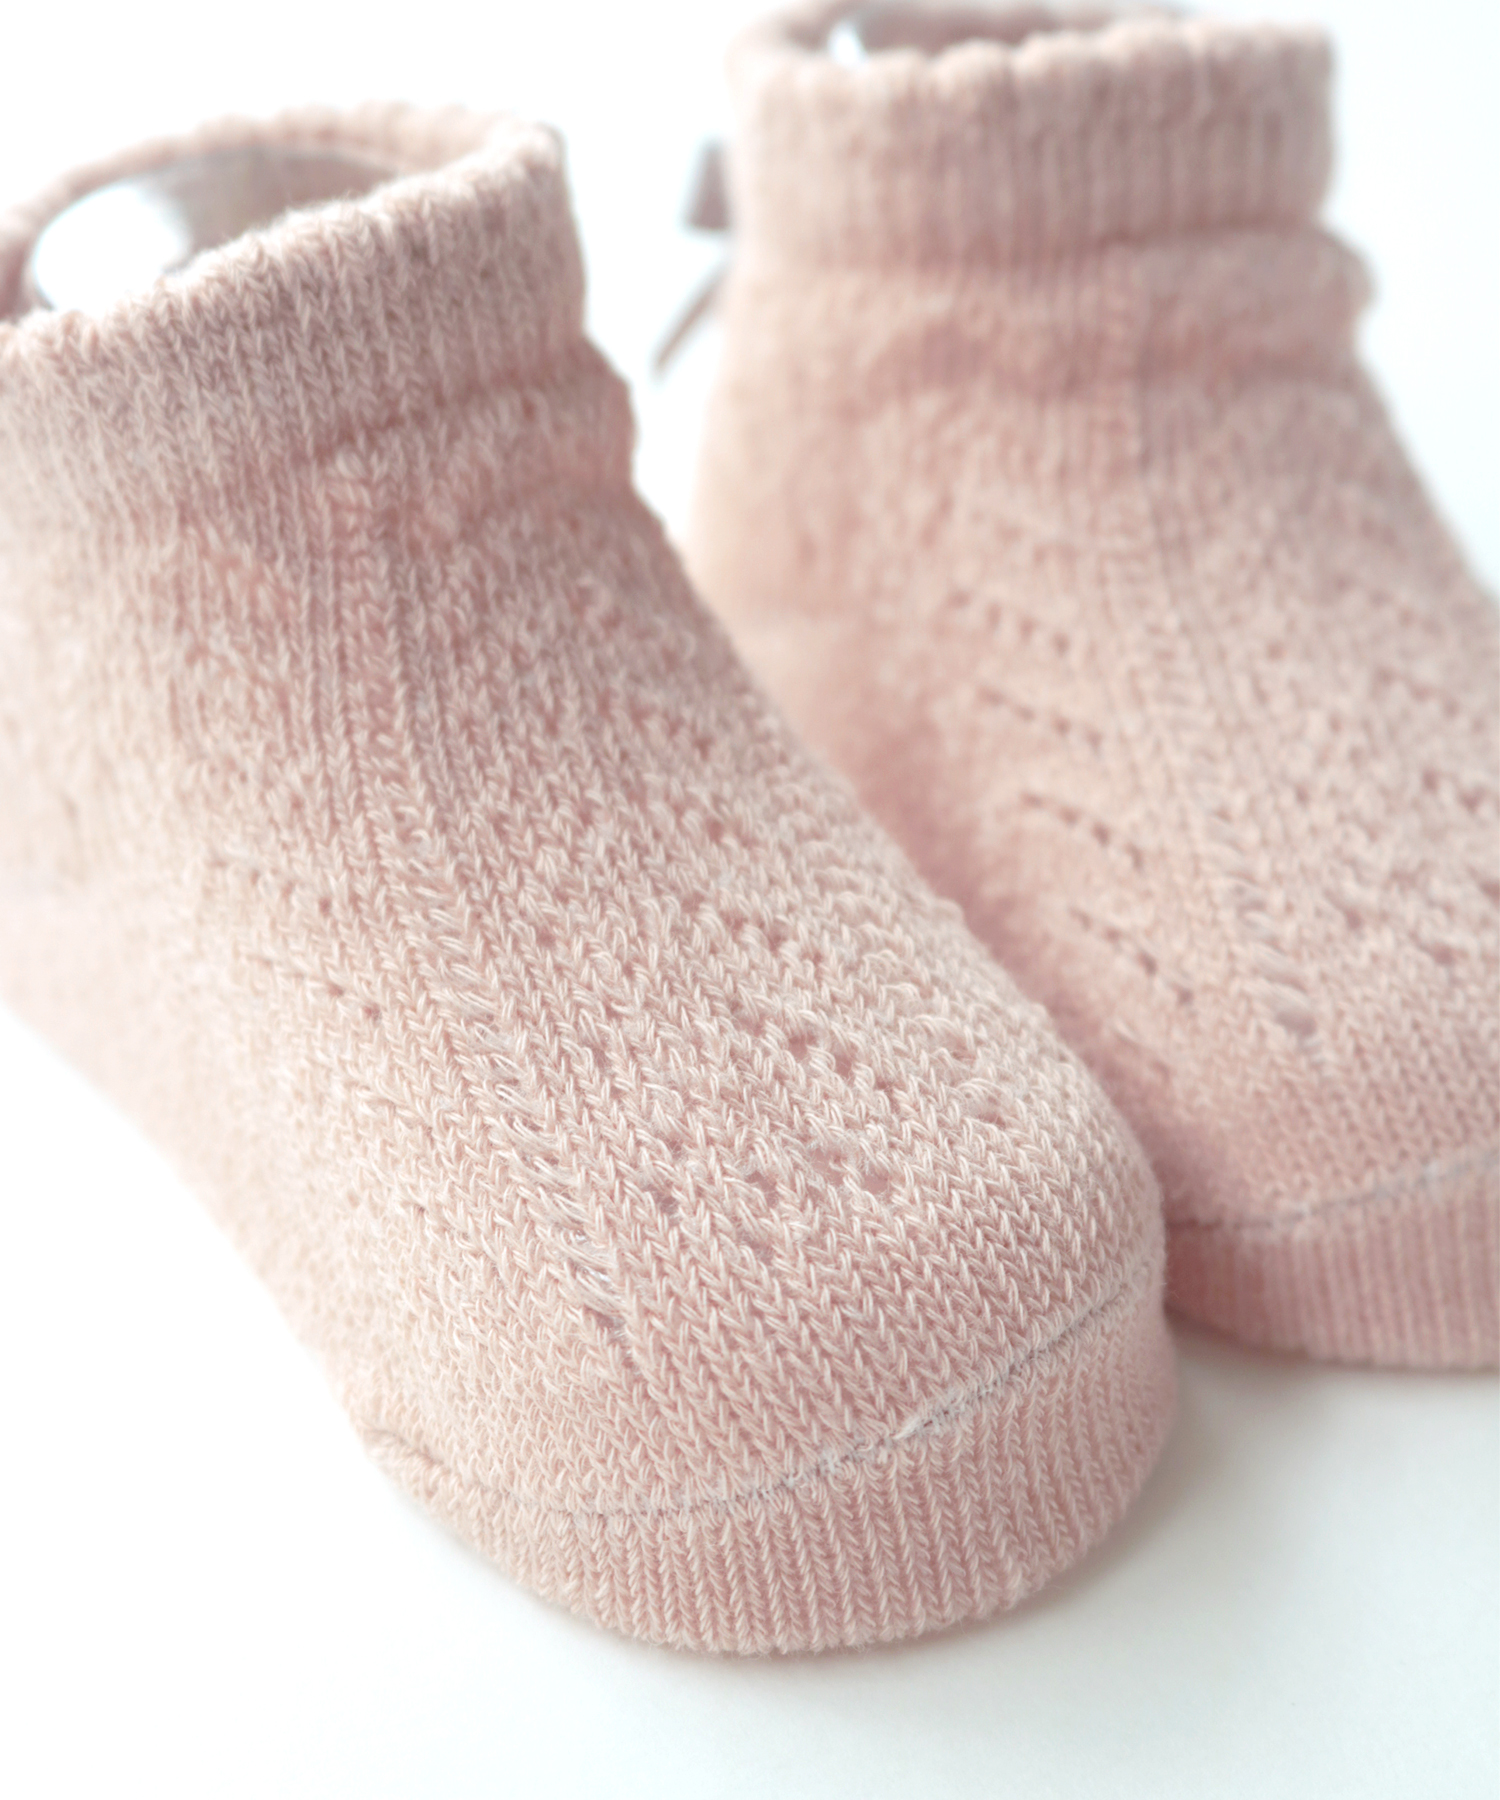 日本発ベビー用品ブランド「スタンプル」レース編み カップ入りベビーソックス靴下プチギフト・出産祝いプレゼントに！サイズ9-11㎝（目安3-10ヵ月）3色画像